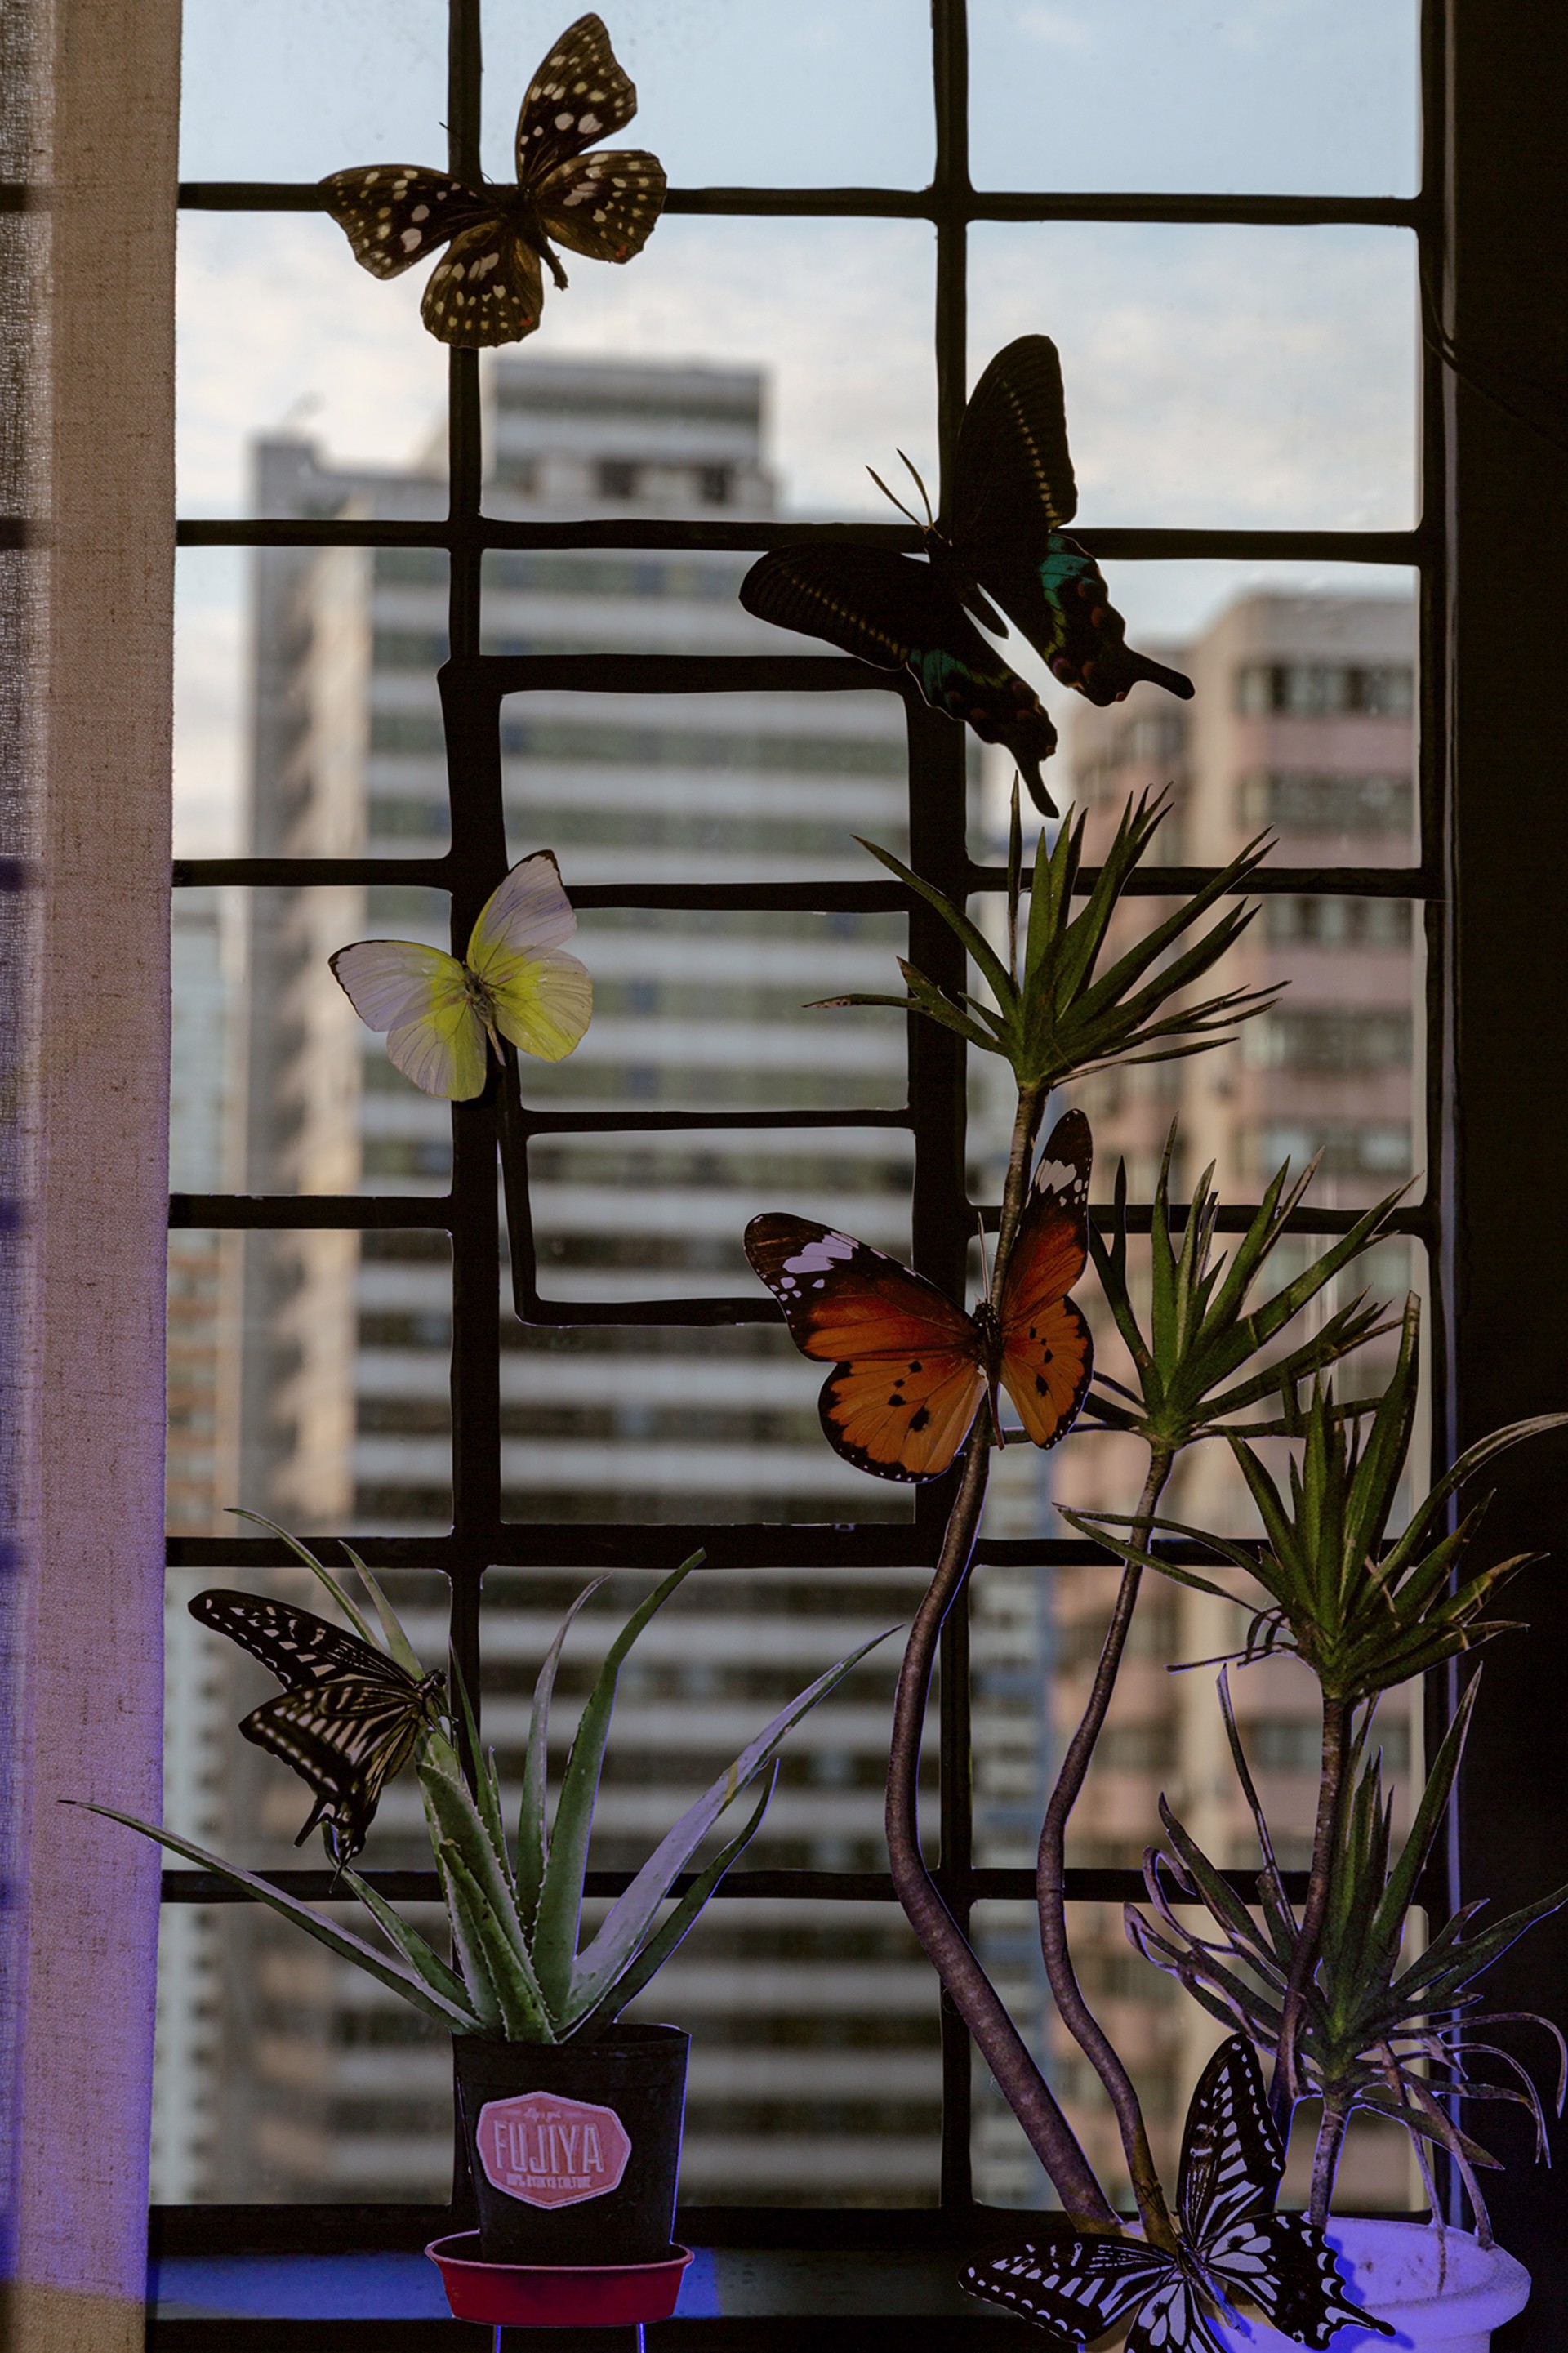 No Butterflies in My City by Xiwen Zhu